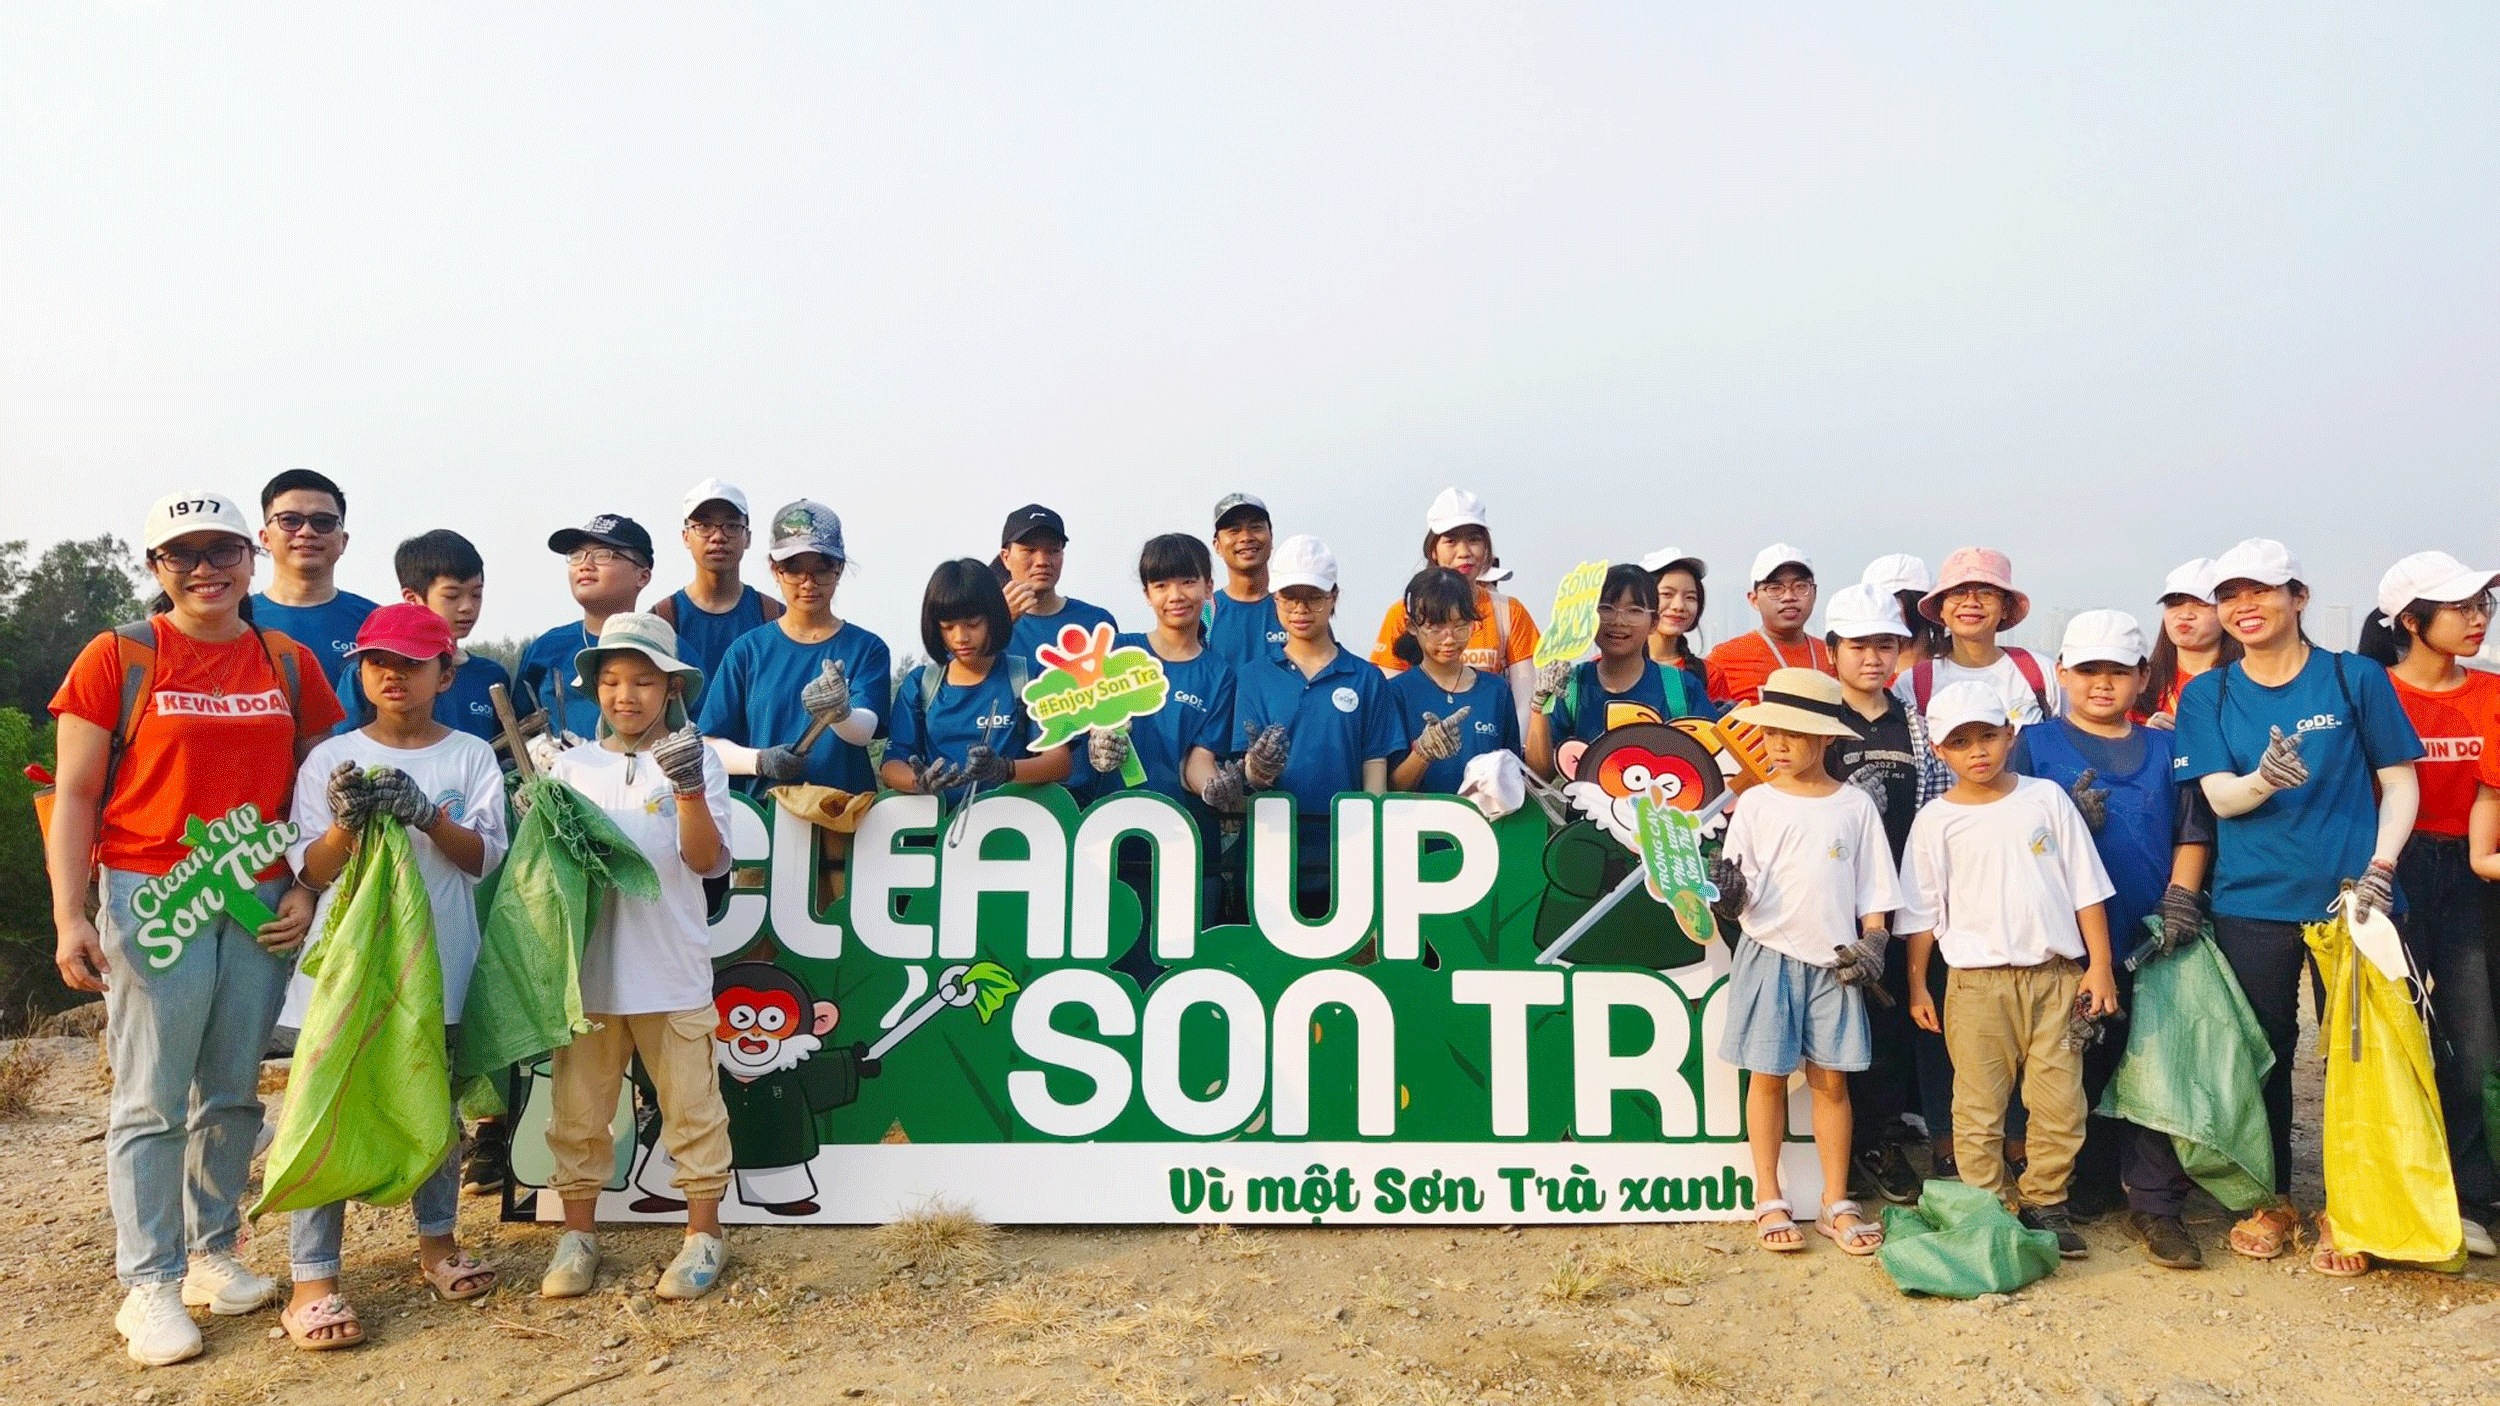 Đà Nẵng: Phát triển du lịch xanh